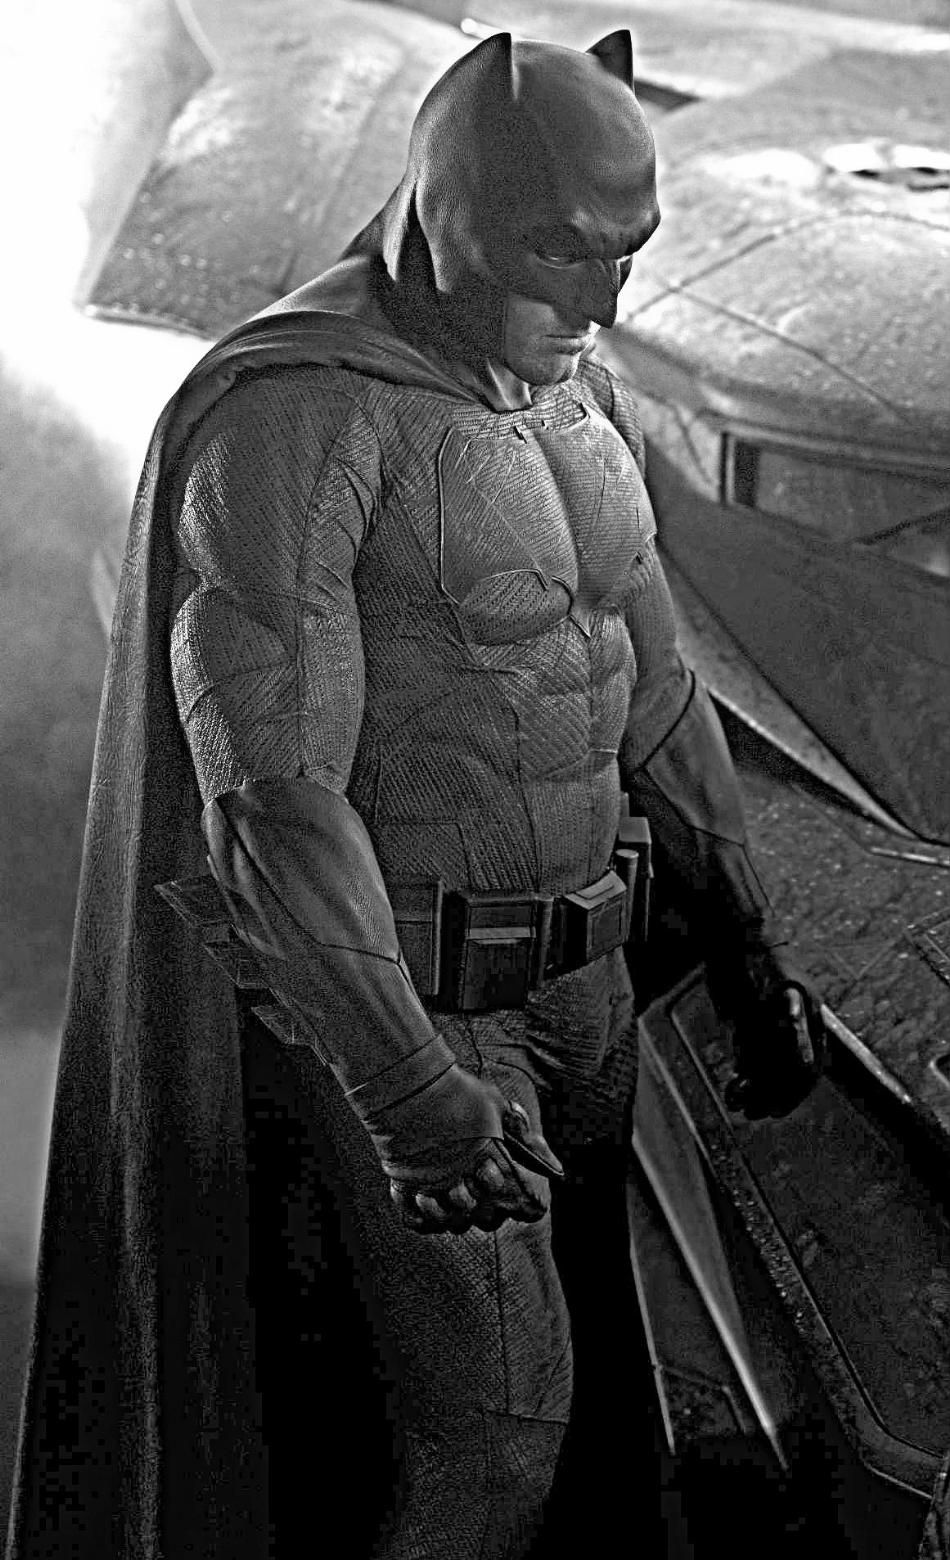 Batman in Batman Vs. Superman Photo Close-Up 3